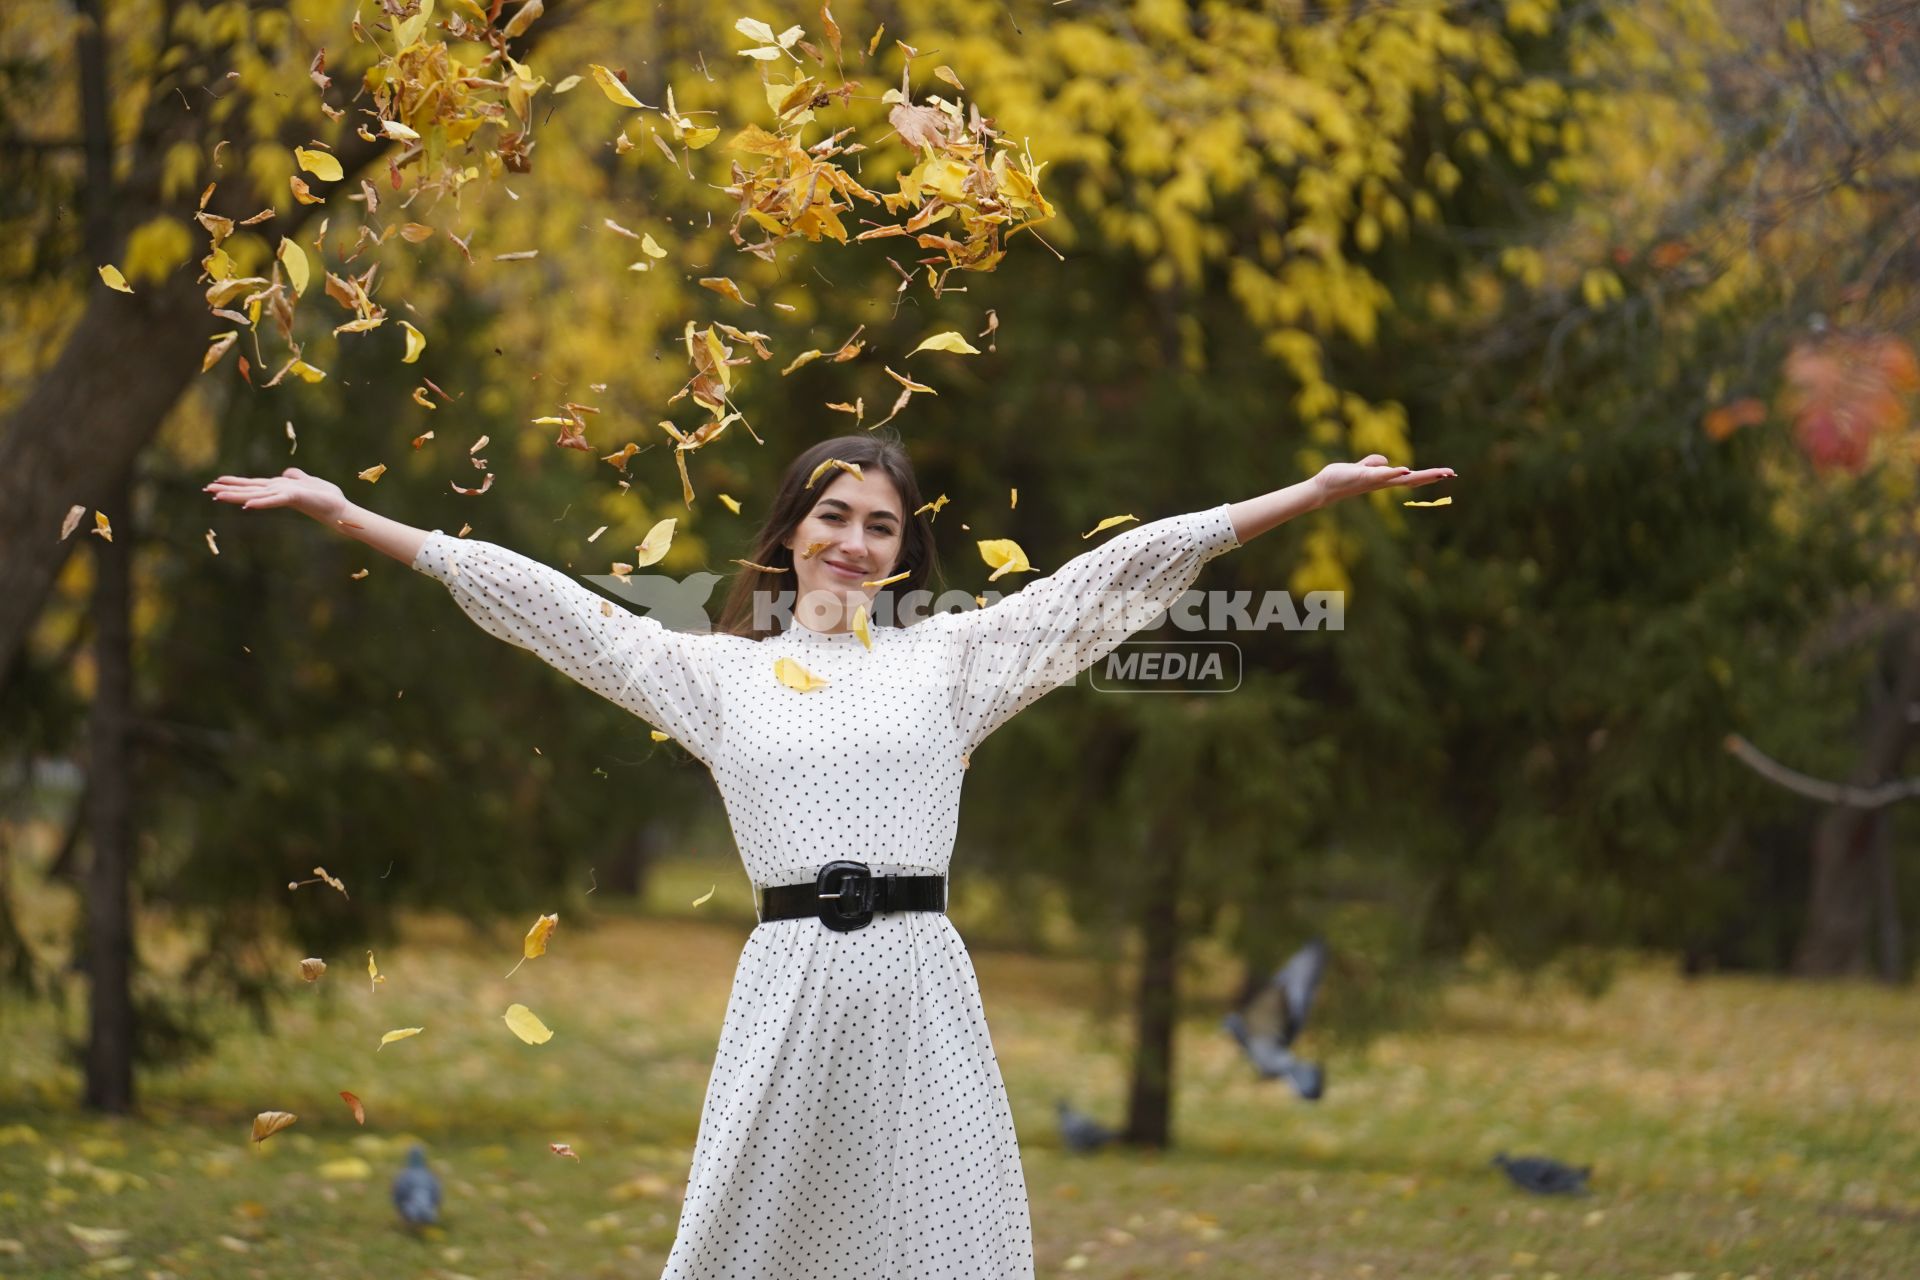 Самара. Девушка подкидывает листья в осеннем парке.